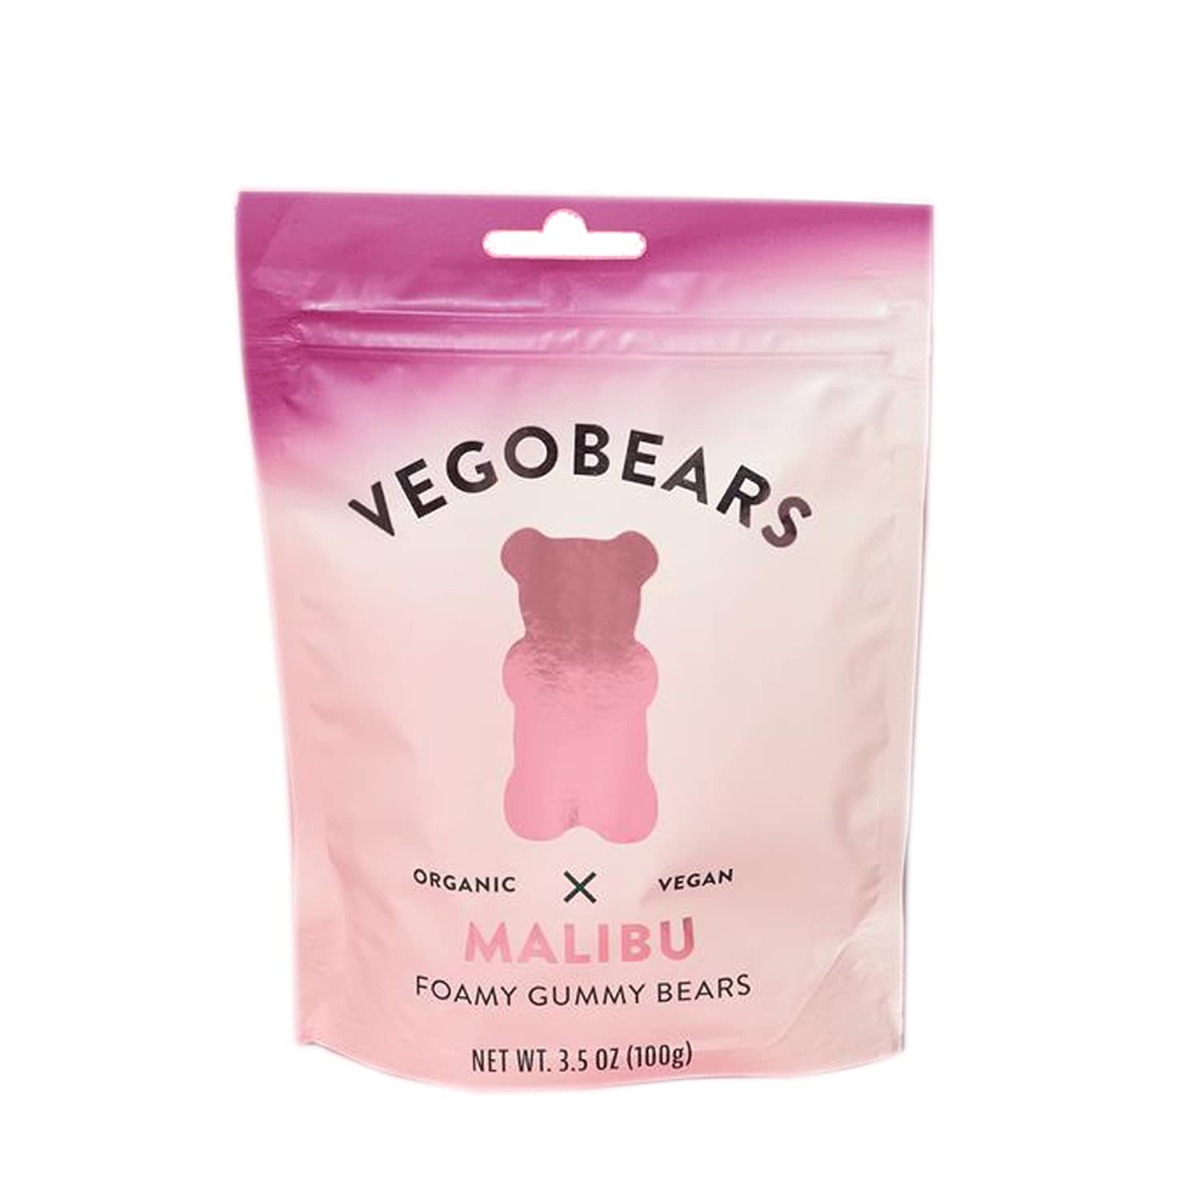 Picture of Vegobears KHRM00388927 3.5 oz Malibu Foamy Gummy Bears